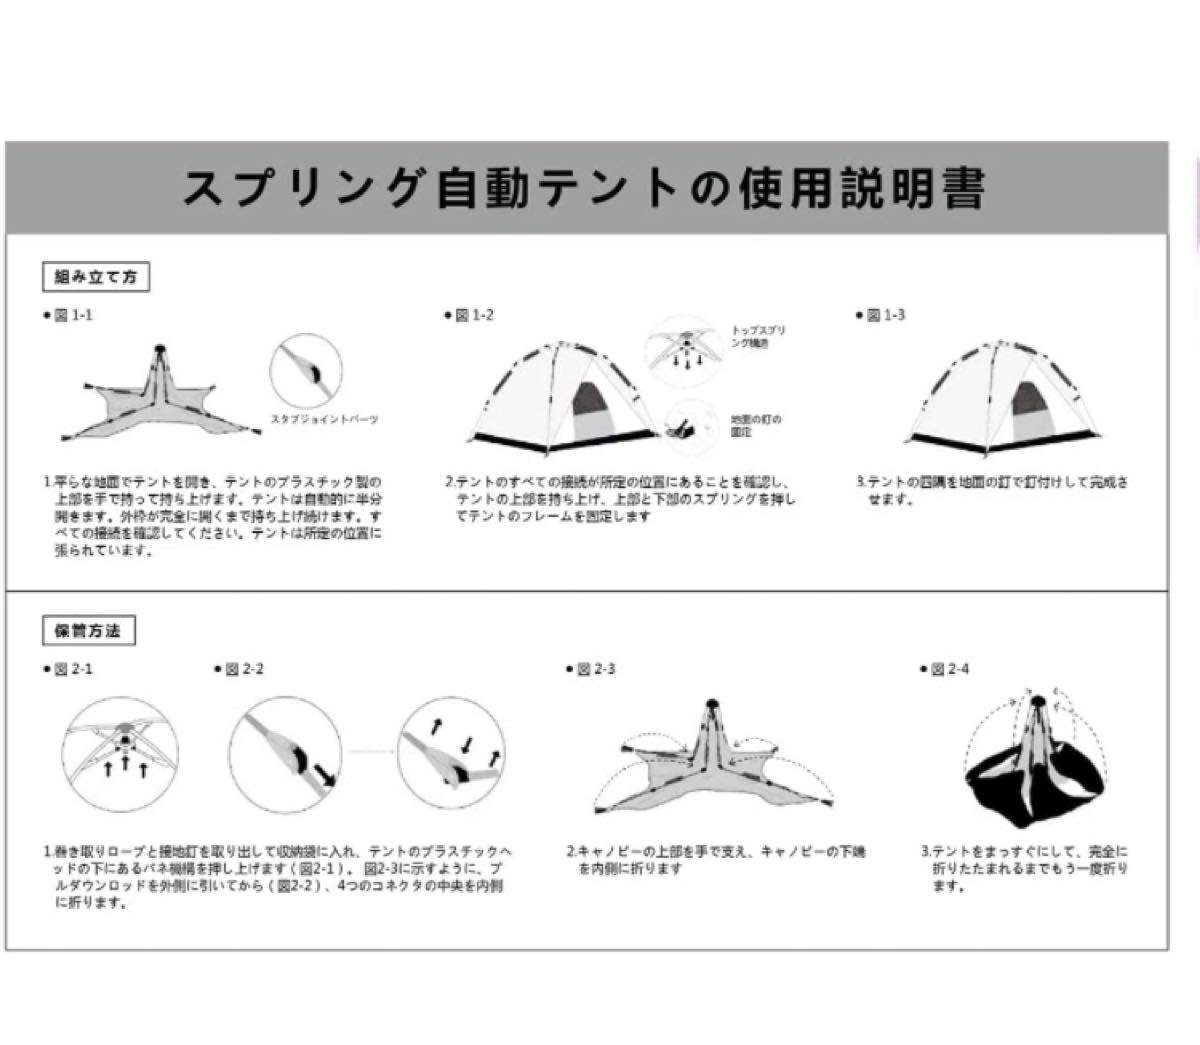 テントワンタッチテント3〜4人用キャンプテント1層式の簡単設置UVカット加工防風